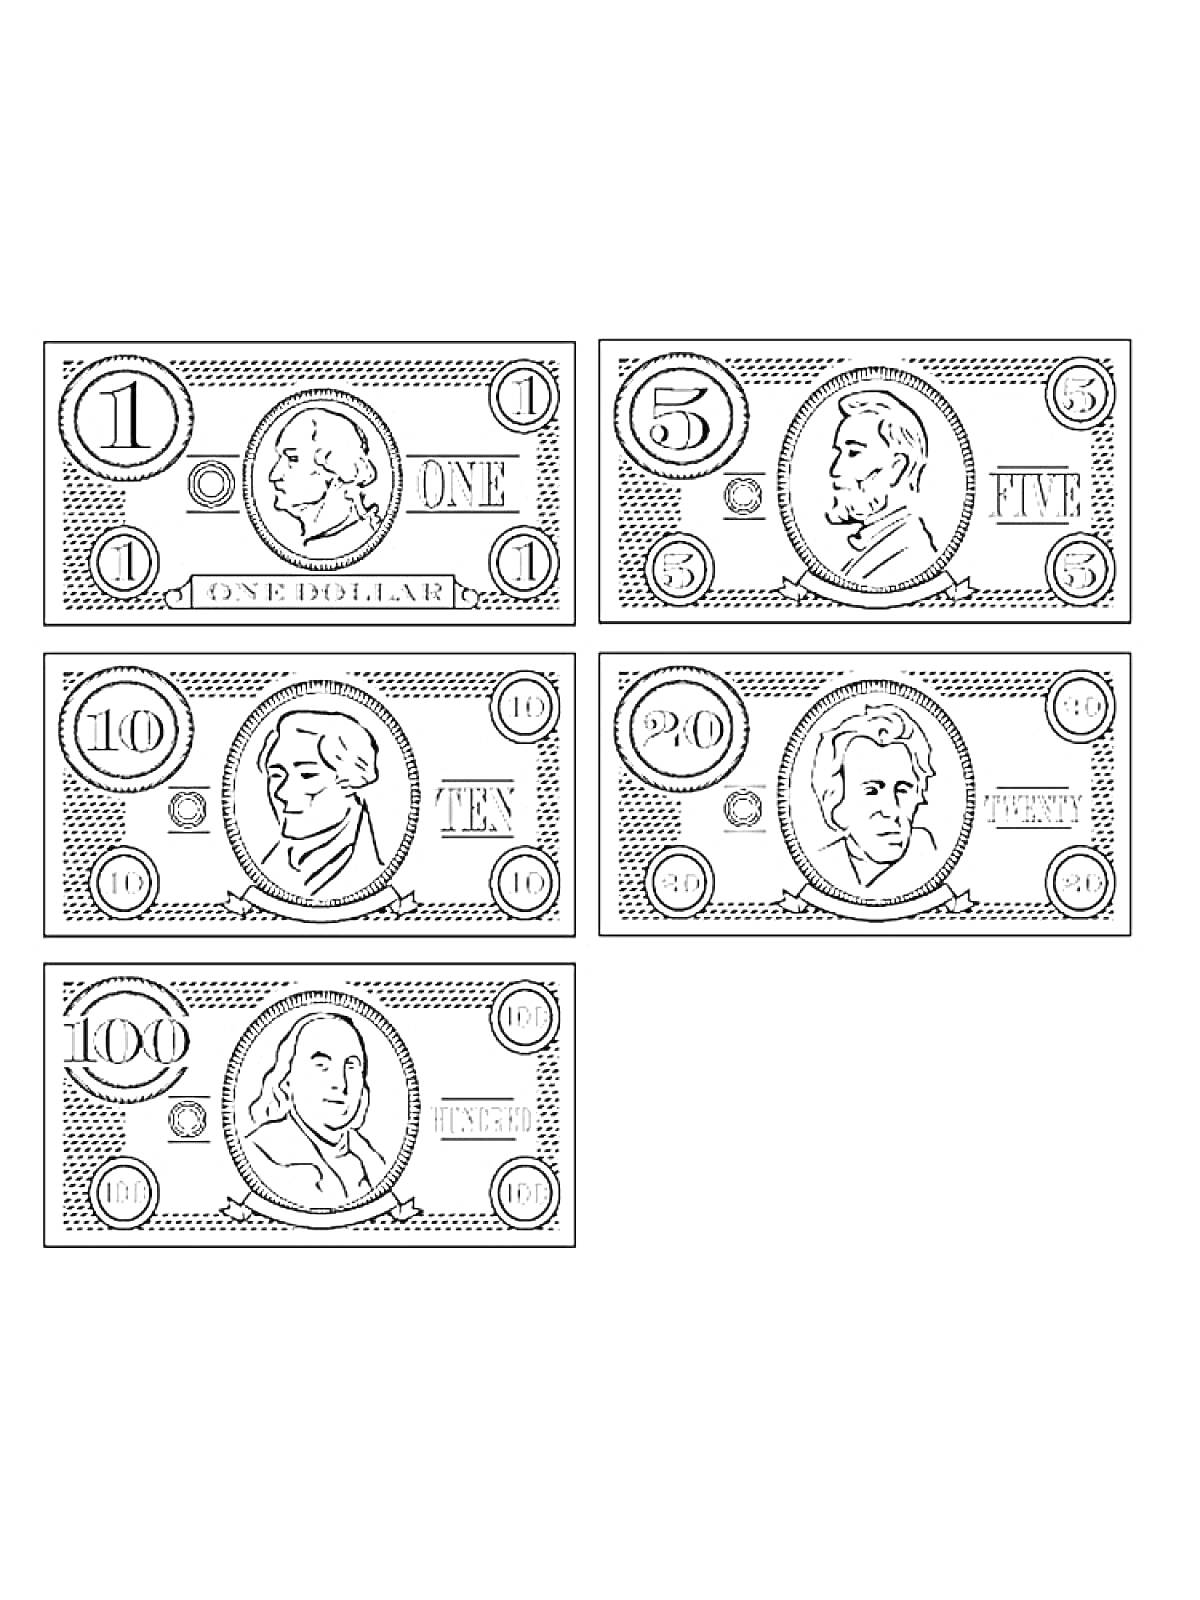 Долларовые банкноты разного номинала: $1, $5, $10, $20 и $100 с изображением людей